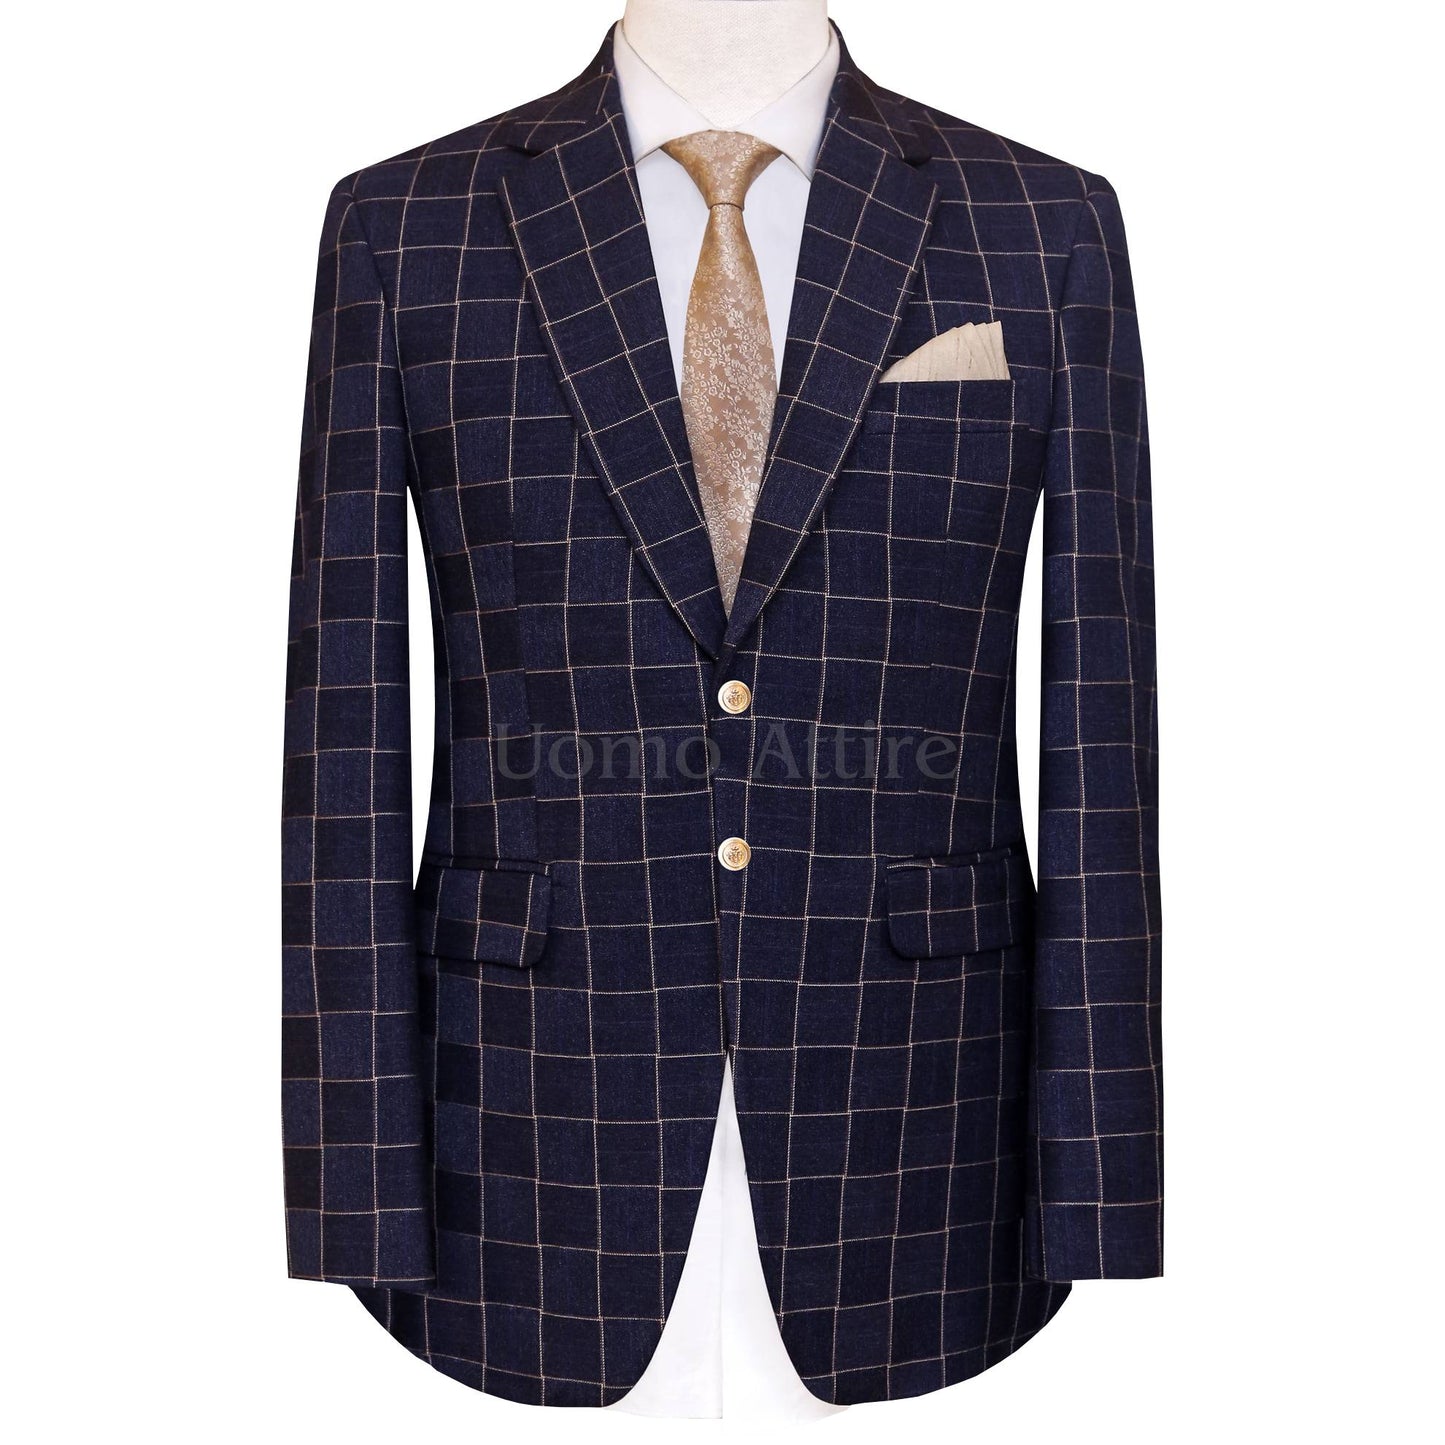 Custom-tailored windowpane customized 2 piece suit